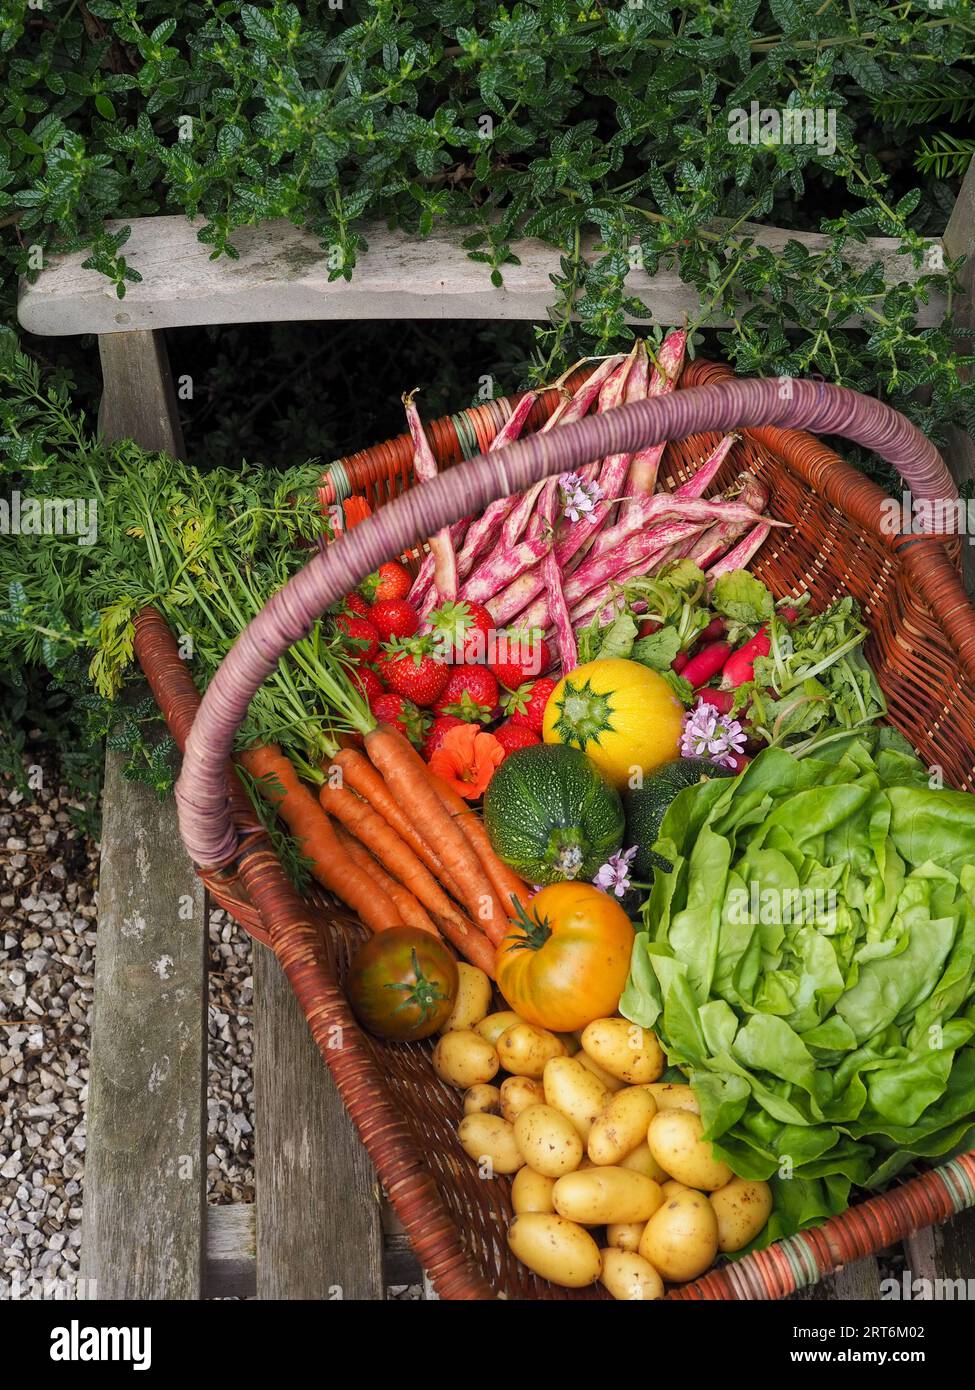 Ein Korb voller frisch geerntetem, farbenfrohem Obst und Gemüse auf einer Gartenbank inmitten von Grün in einem britischen Garten im Sommer Stockfoto